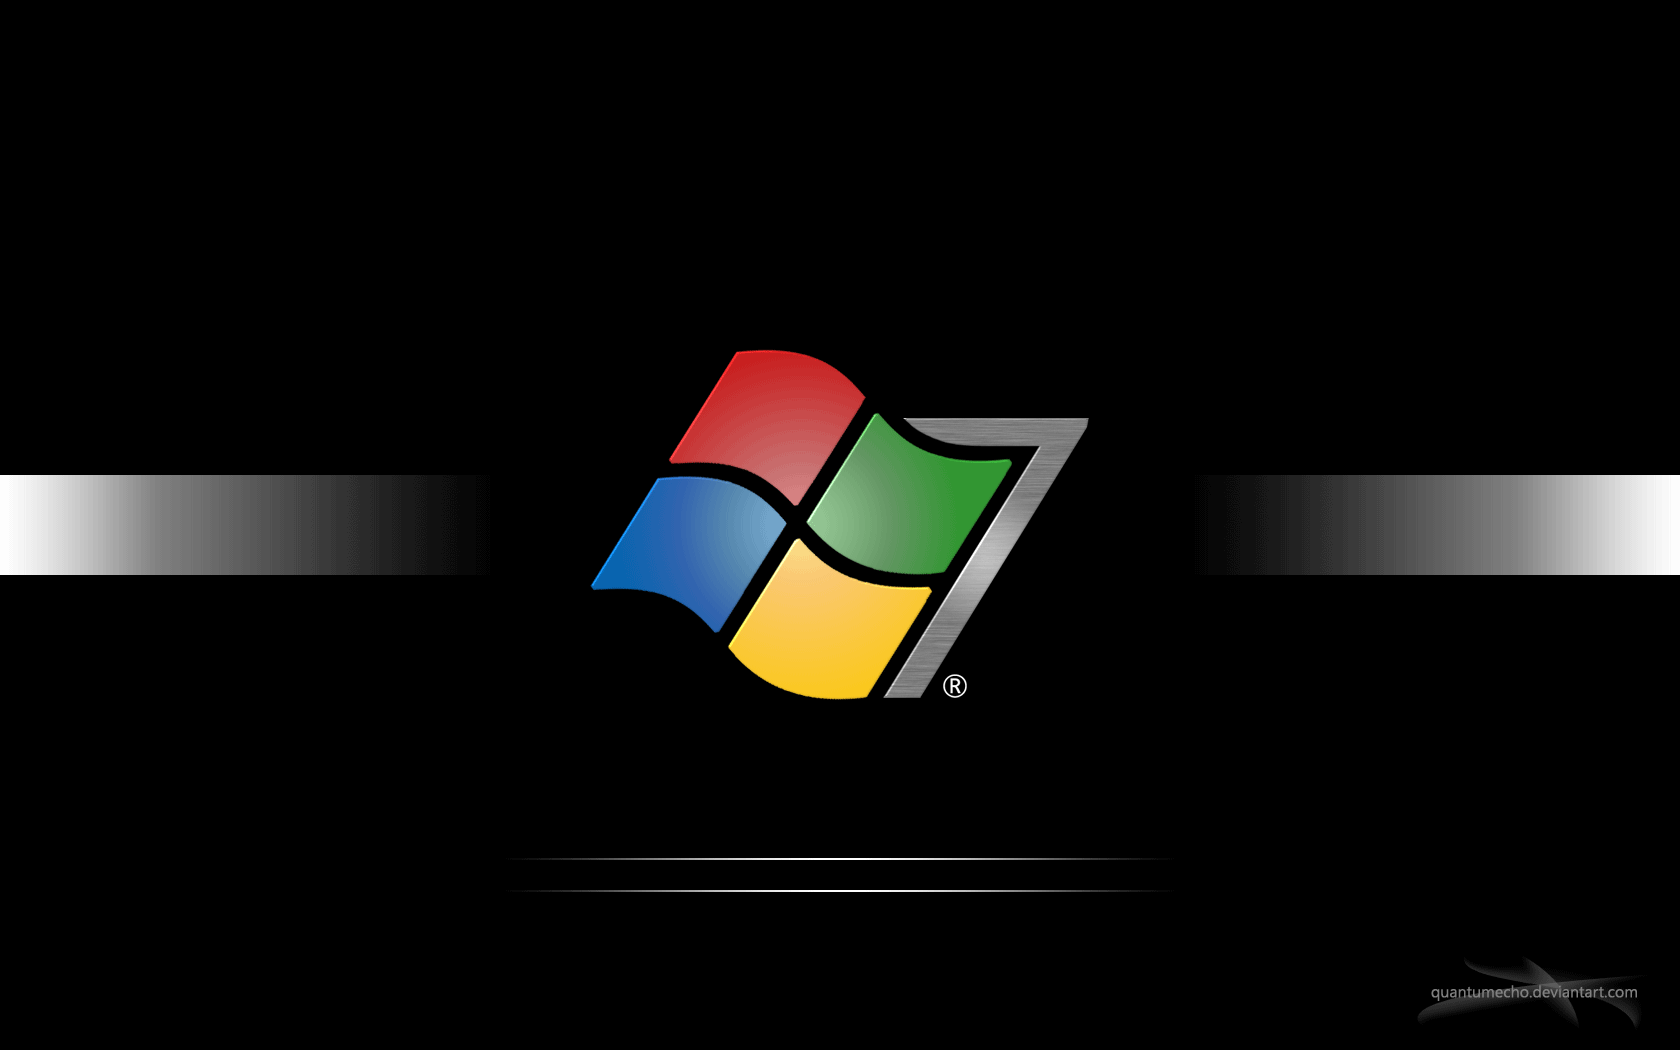 Gif động nền máy tính Windows 8.1 là một trong những điều khiến bạn trở nên khác biệt và thú vị. Bạn sẽ không bao giờ nhàm chán với những hiệu ứng động tuyệt đẹp trên màn hình desktop của mình. Khám phá ngay hình ảnh này để tìm được những gif động nền máy tính Windows 8.1 đẹp và độc đáo nhất.